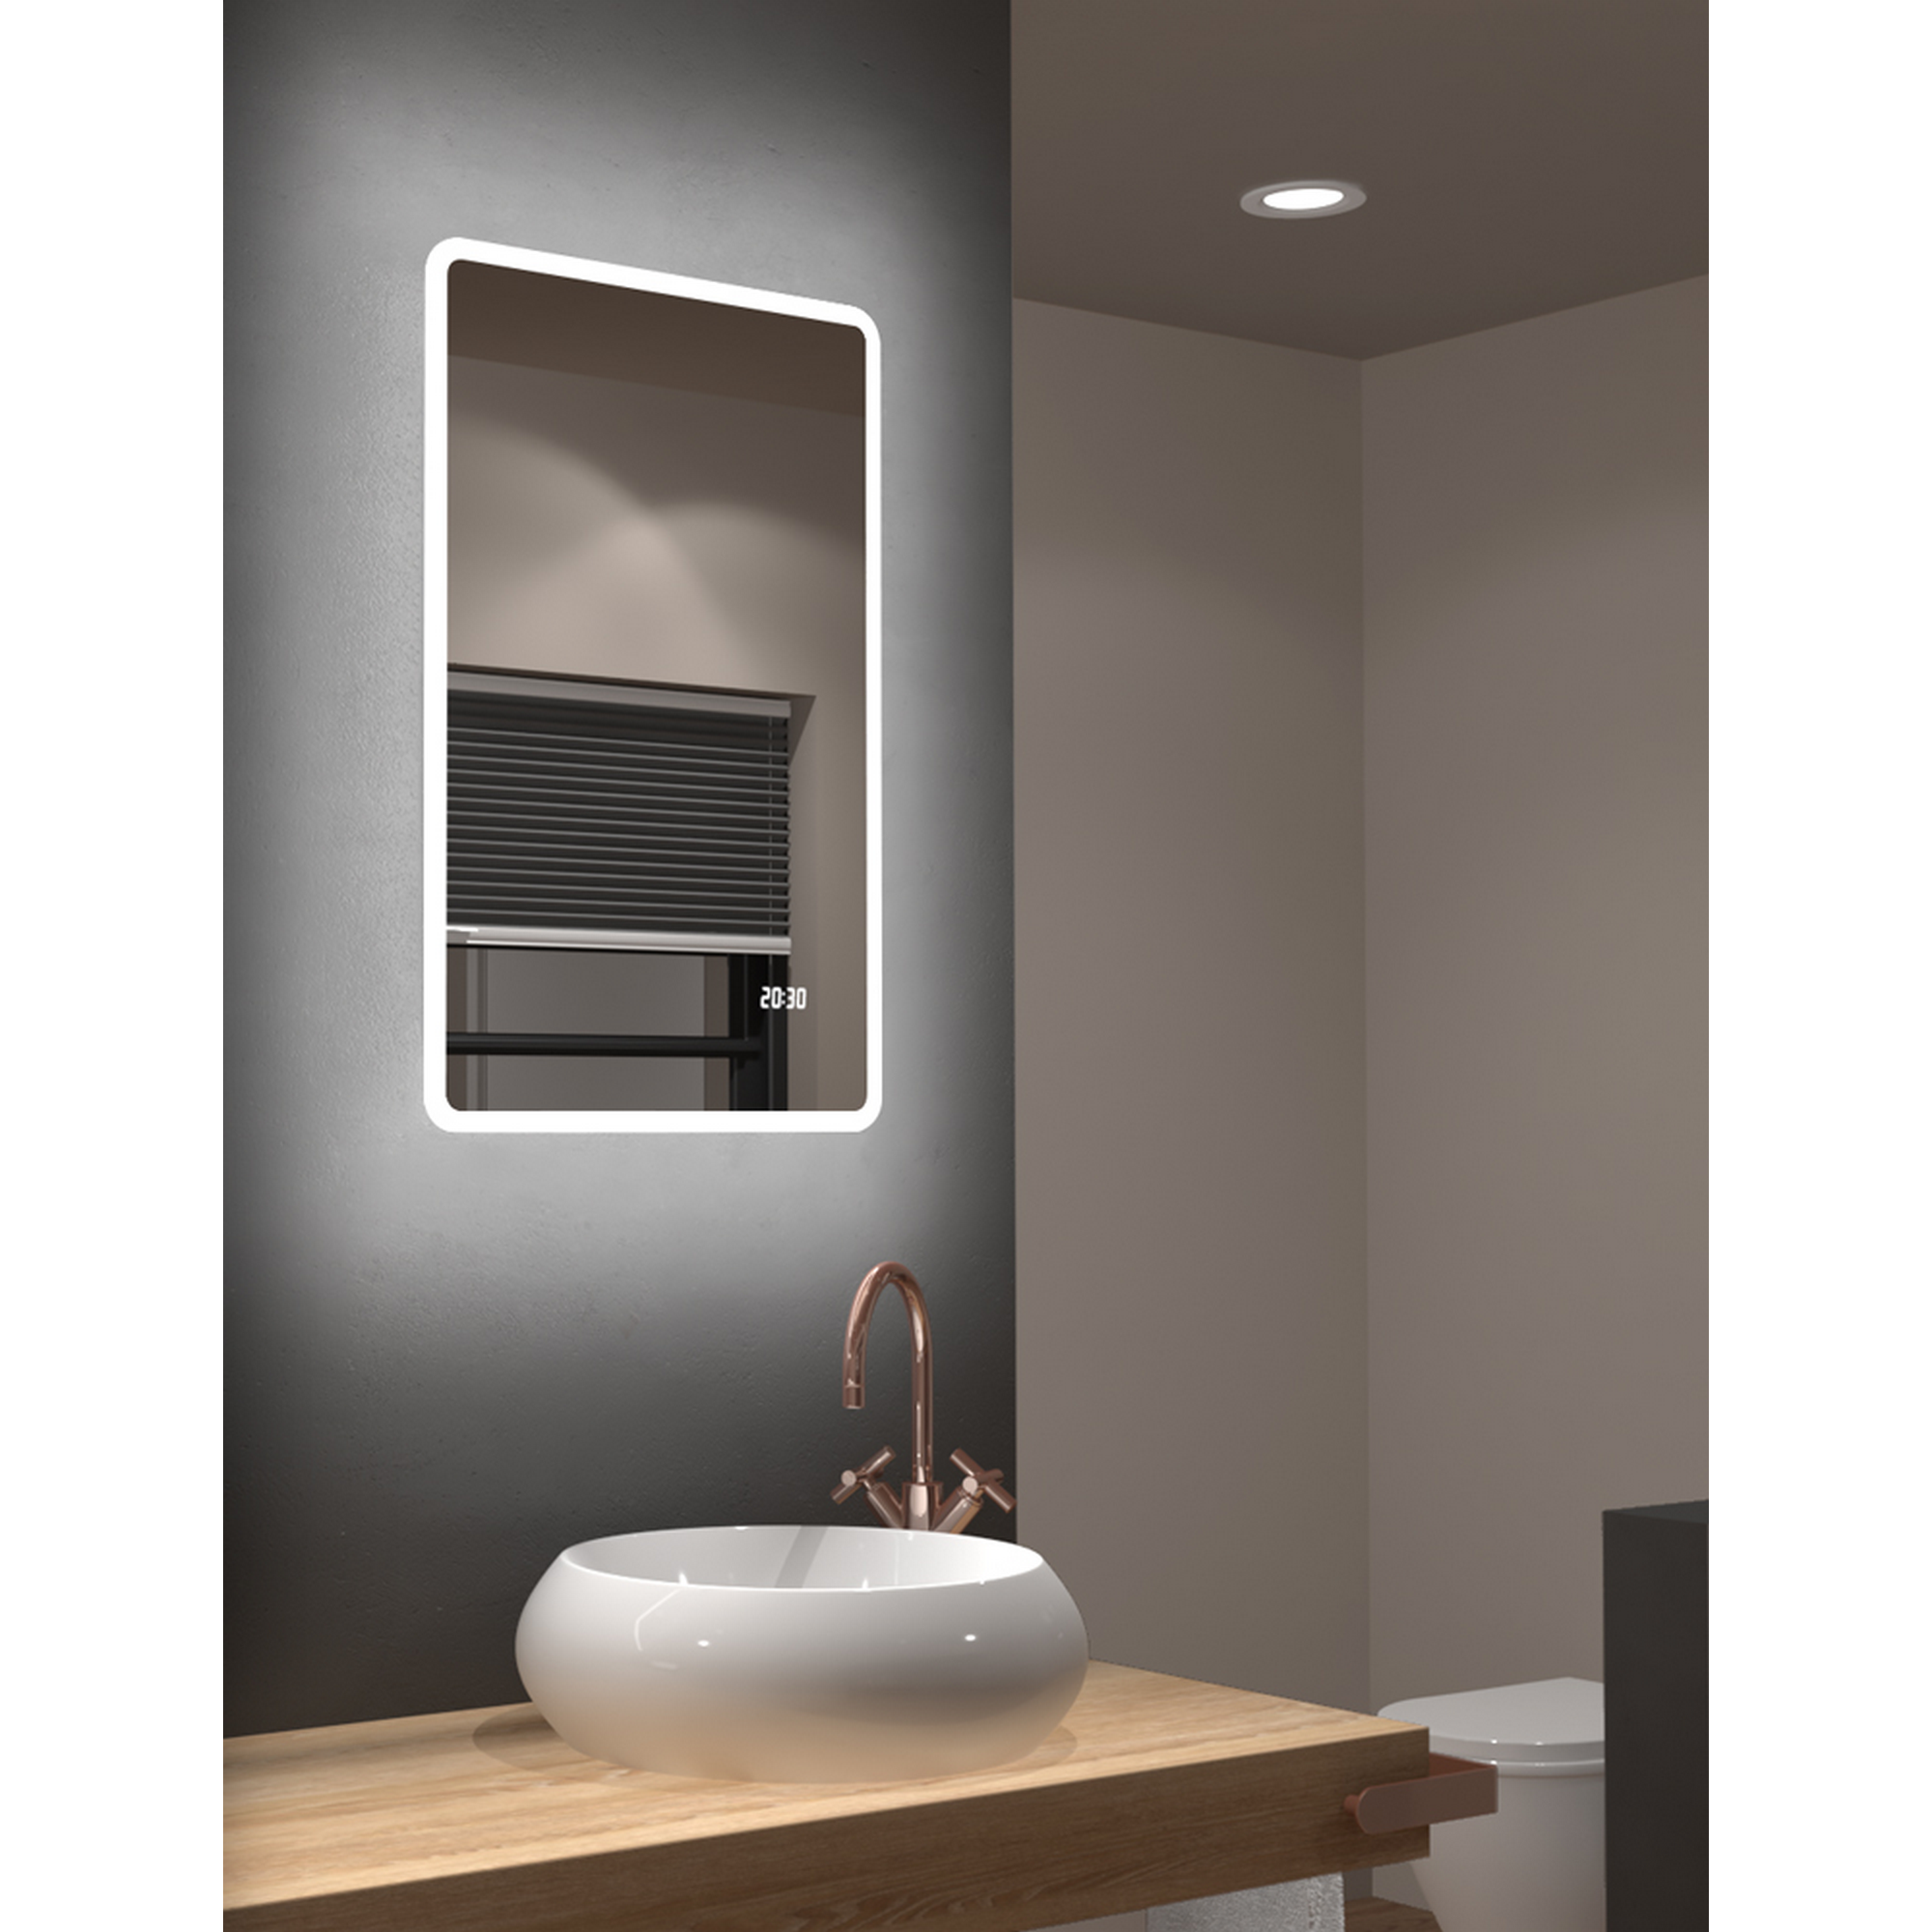 LED-Spiegel 'Silver Sunshine 2.0' mit Uhr 45 x 70 cm + product picture